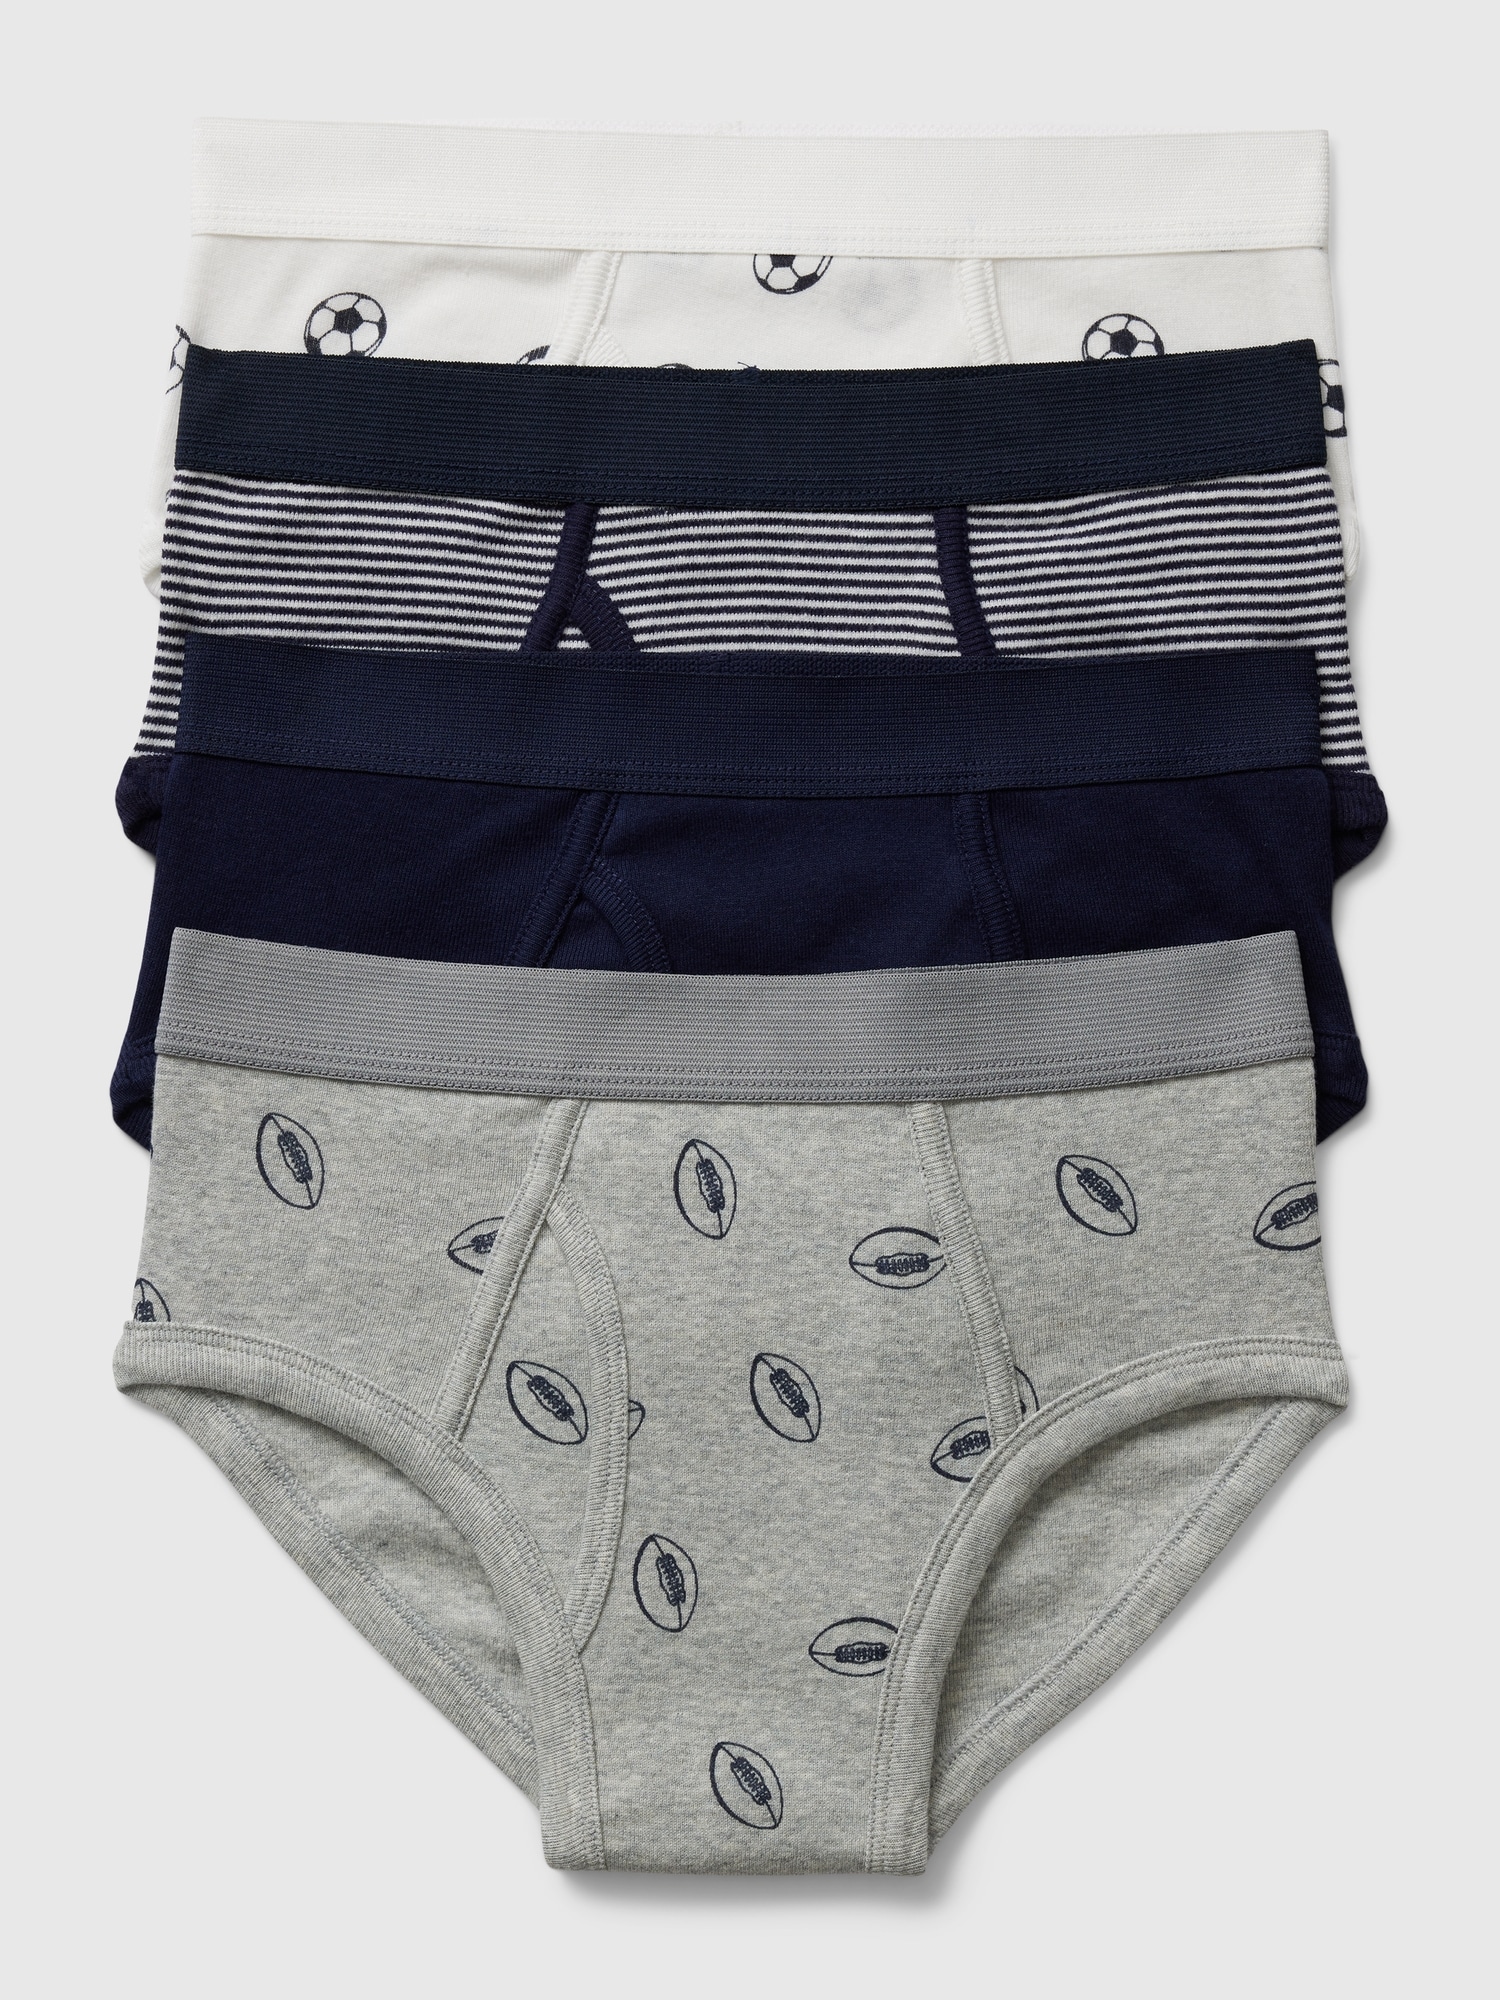 Calvin Klein Kids' Underwear Blue, Grey & Black